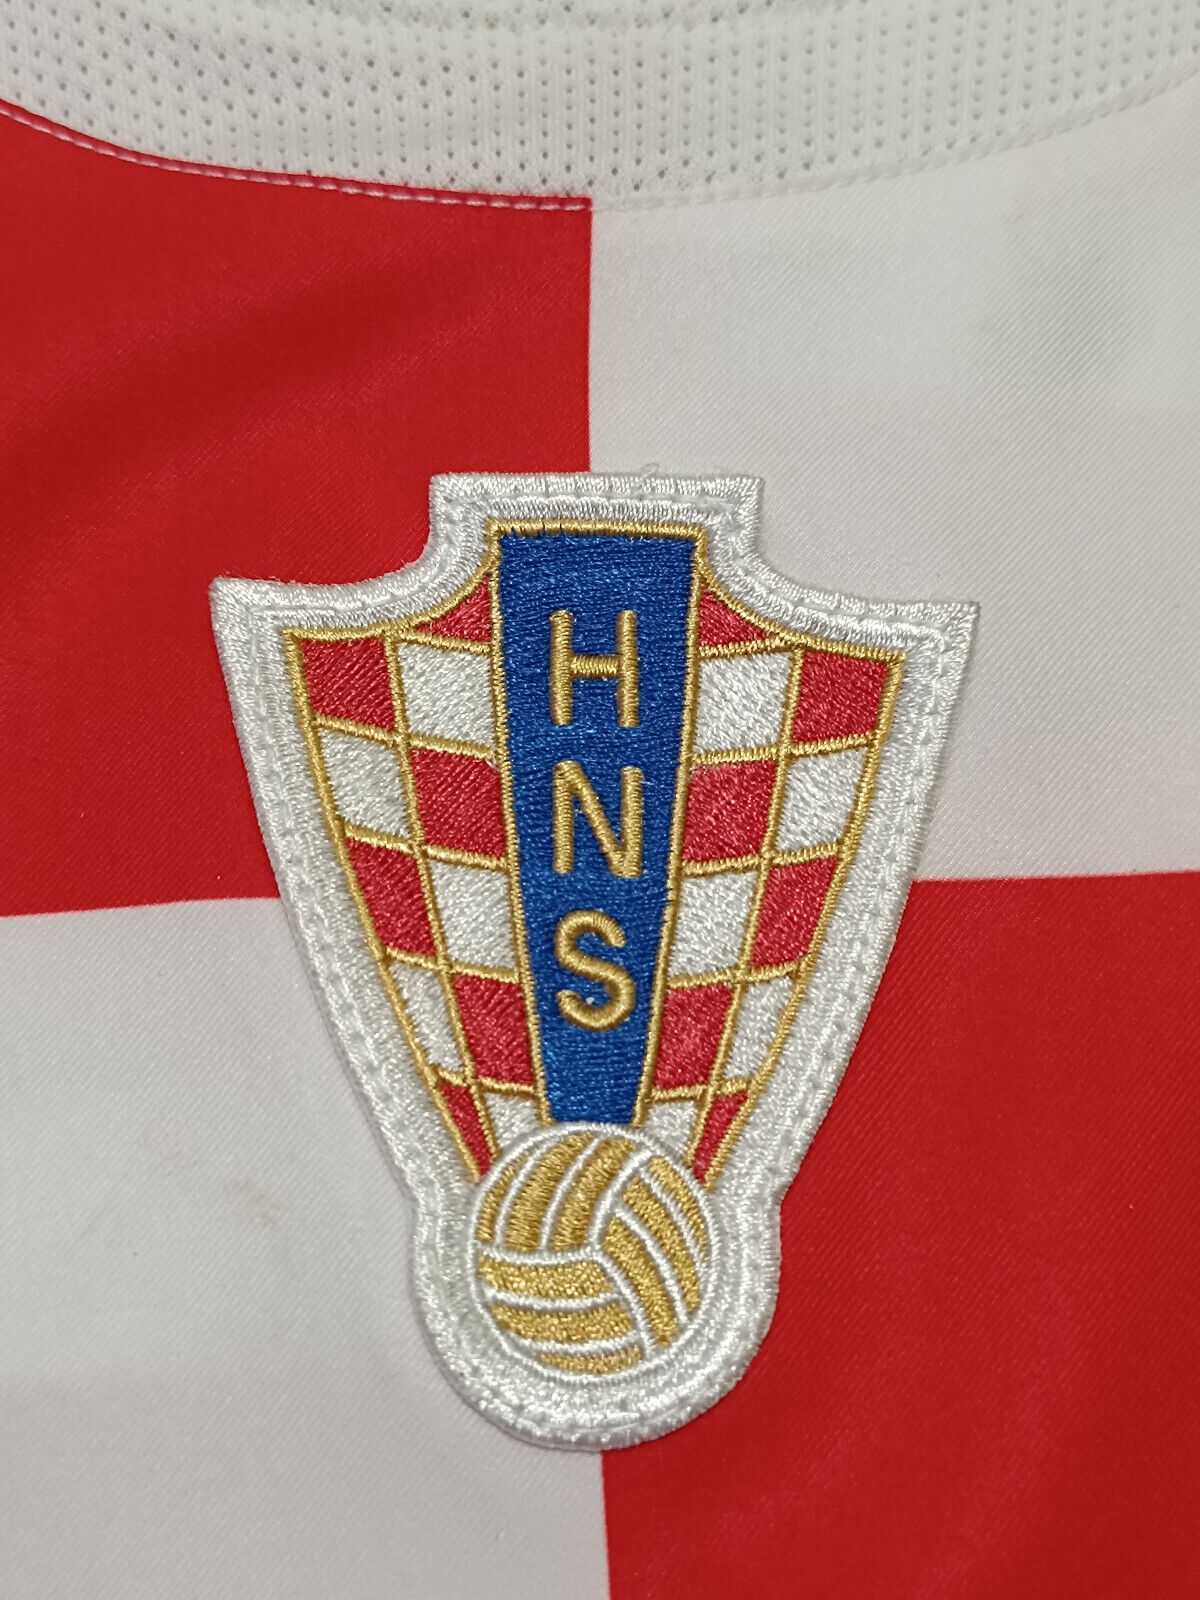 Maglia Croatia Prso 2004-05 Euro 2004 Nike Vintage Kovac *NEW* shirt Jersey Home